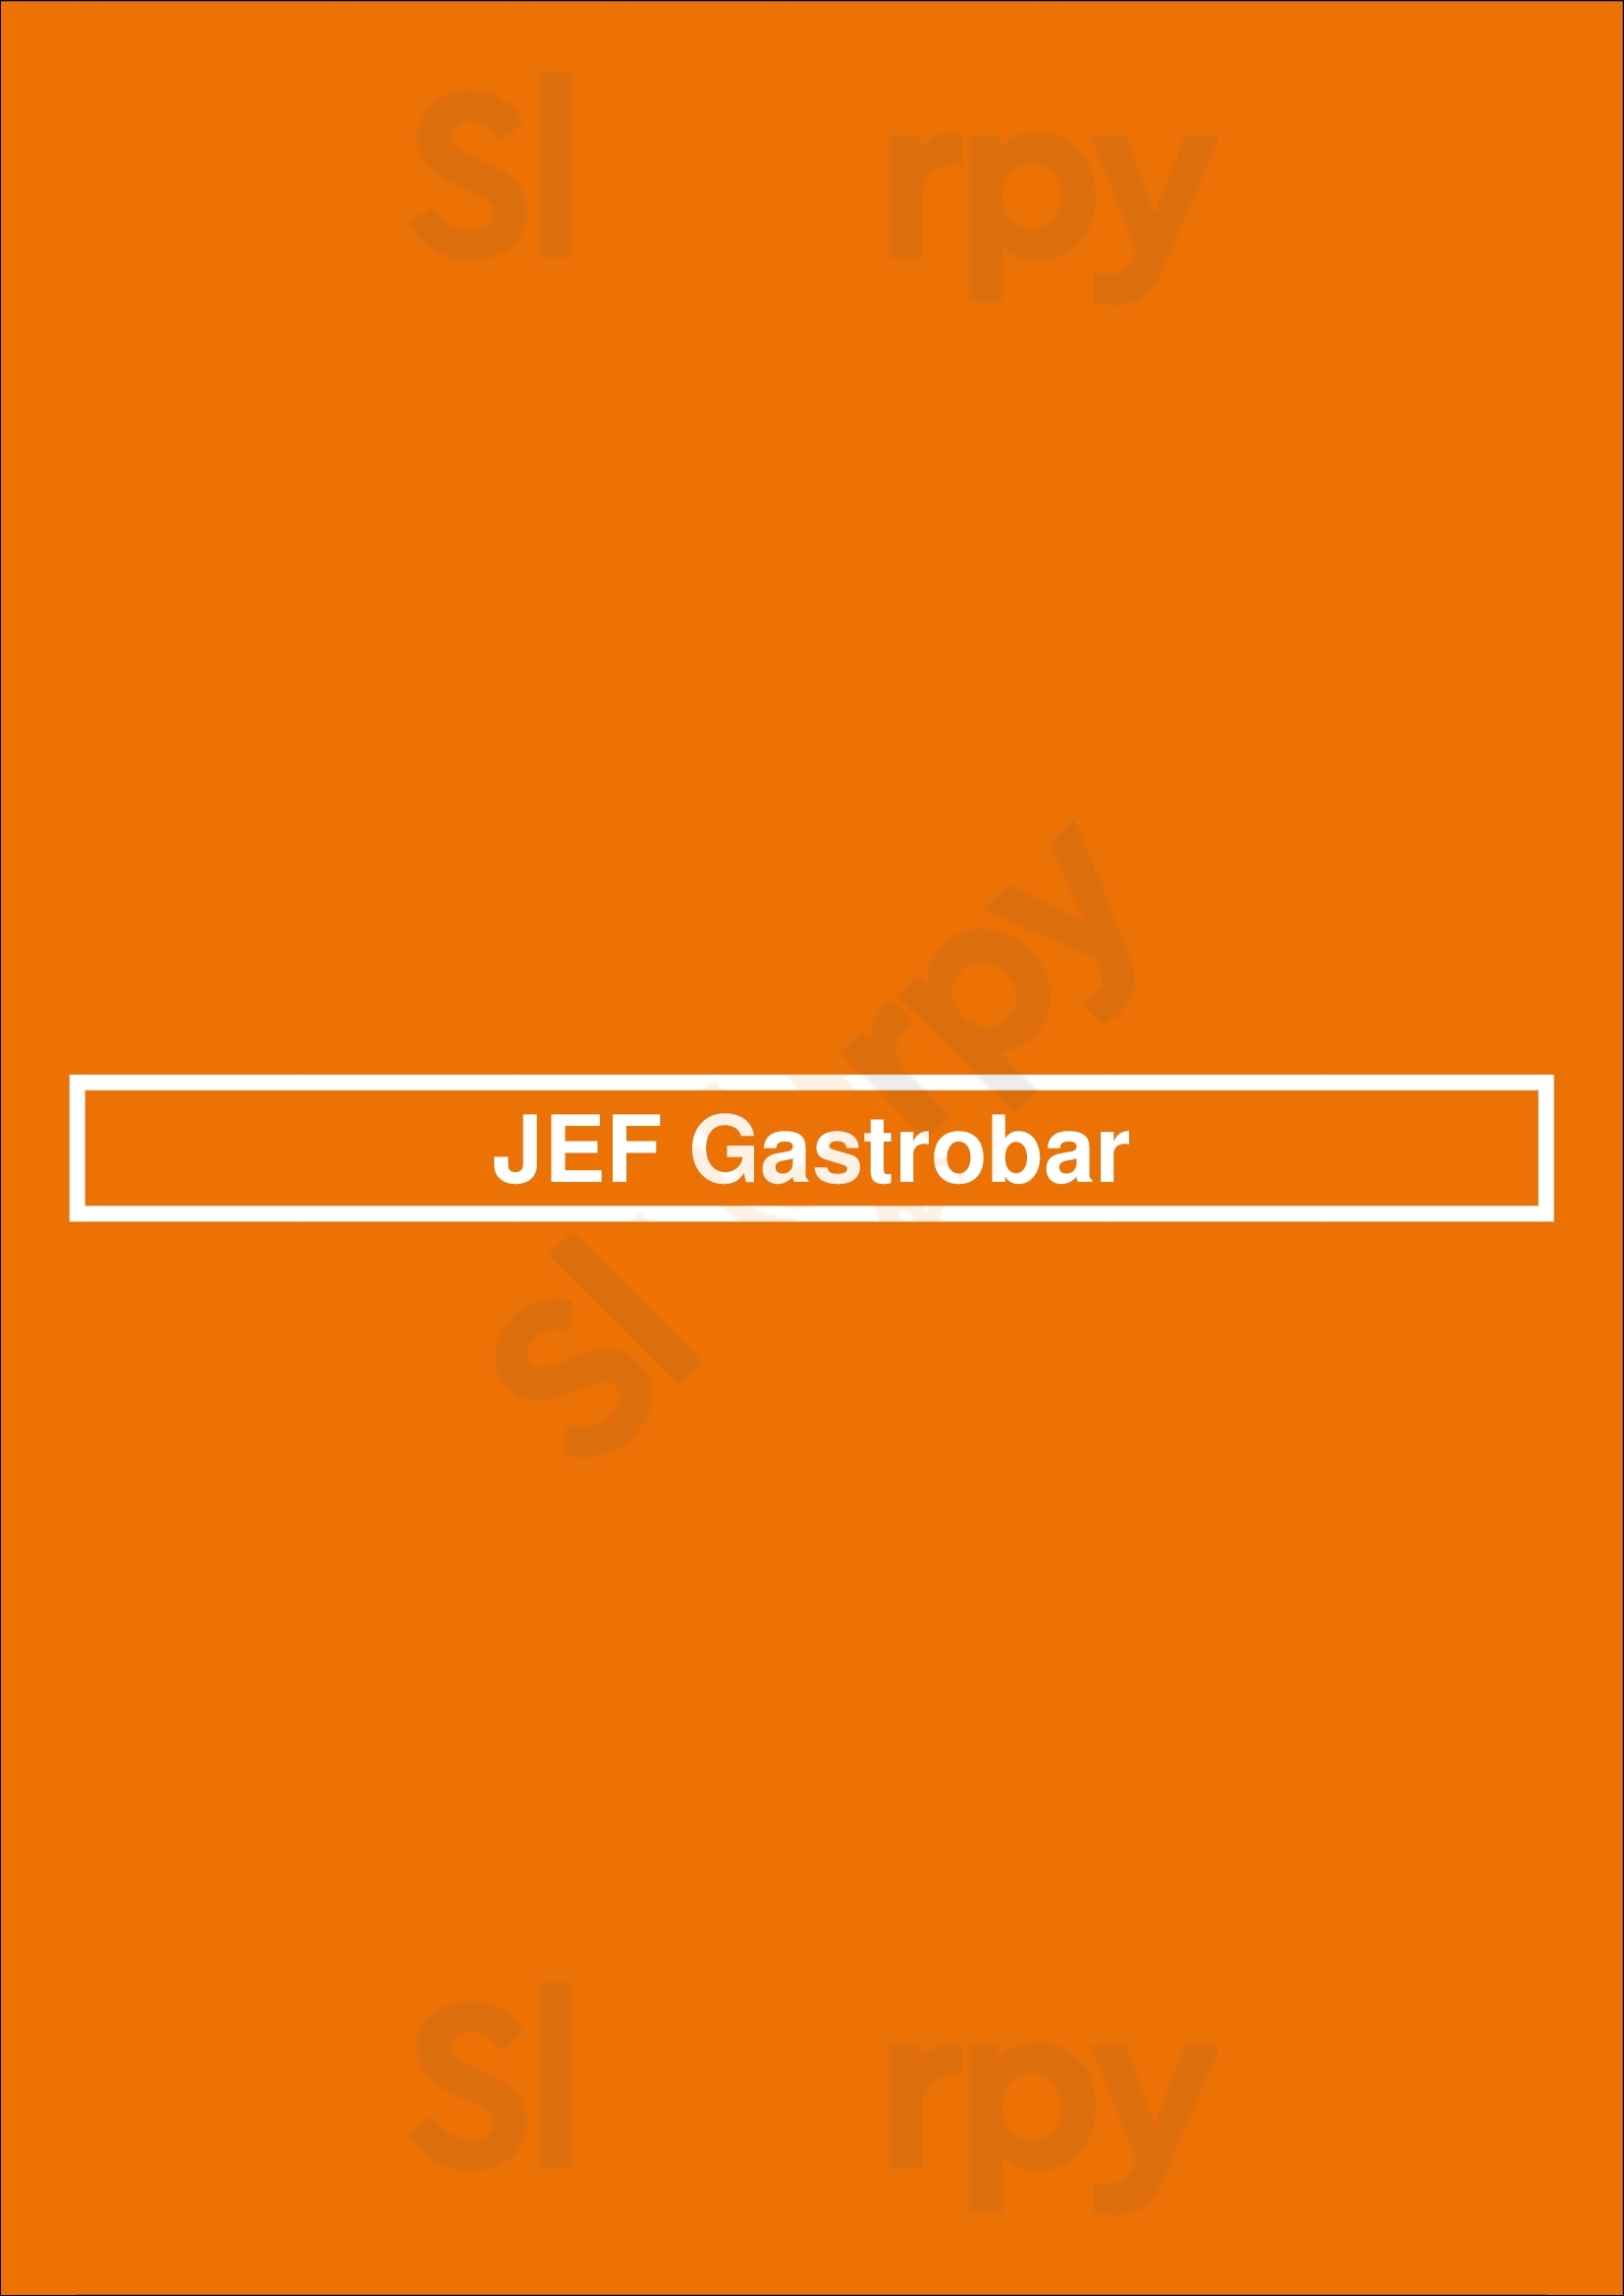 Jef Gastrobar Maastricht Menu - 1